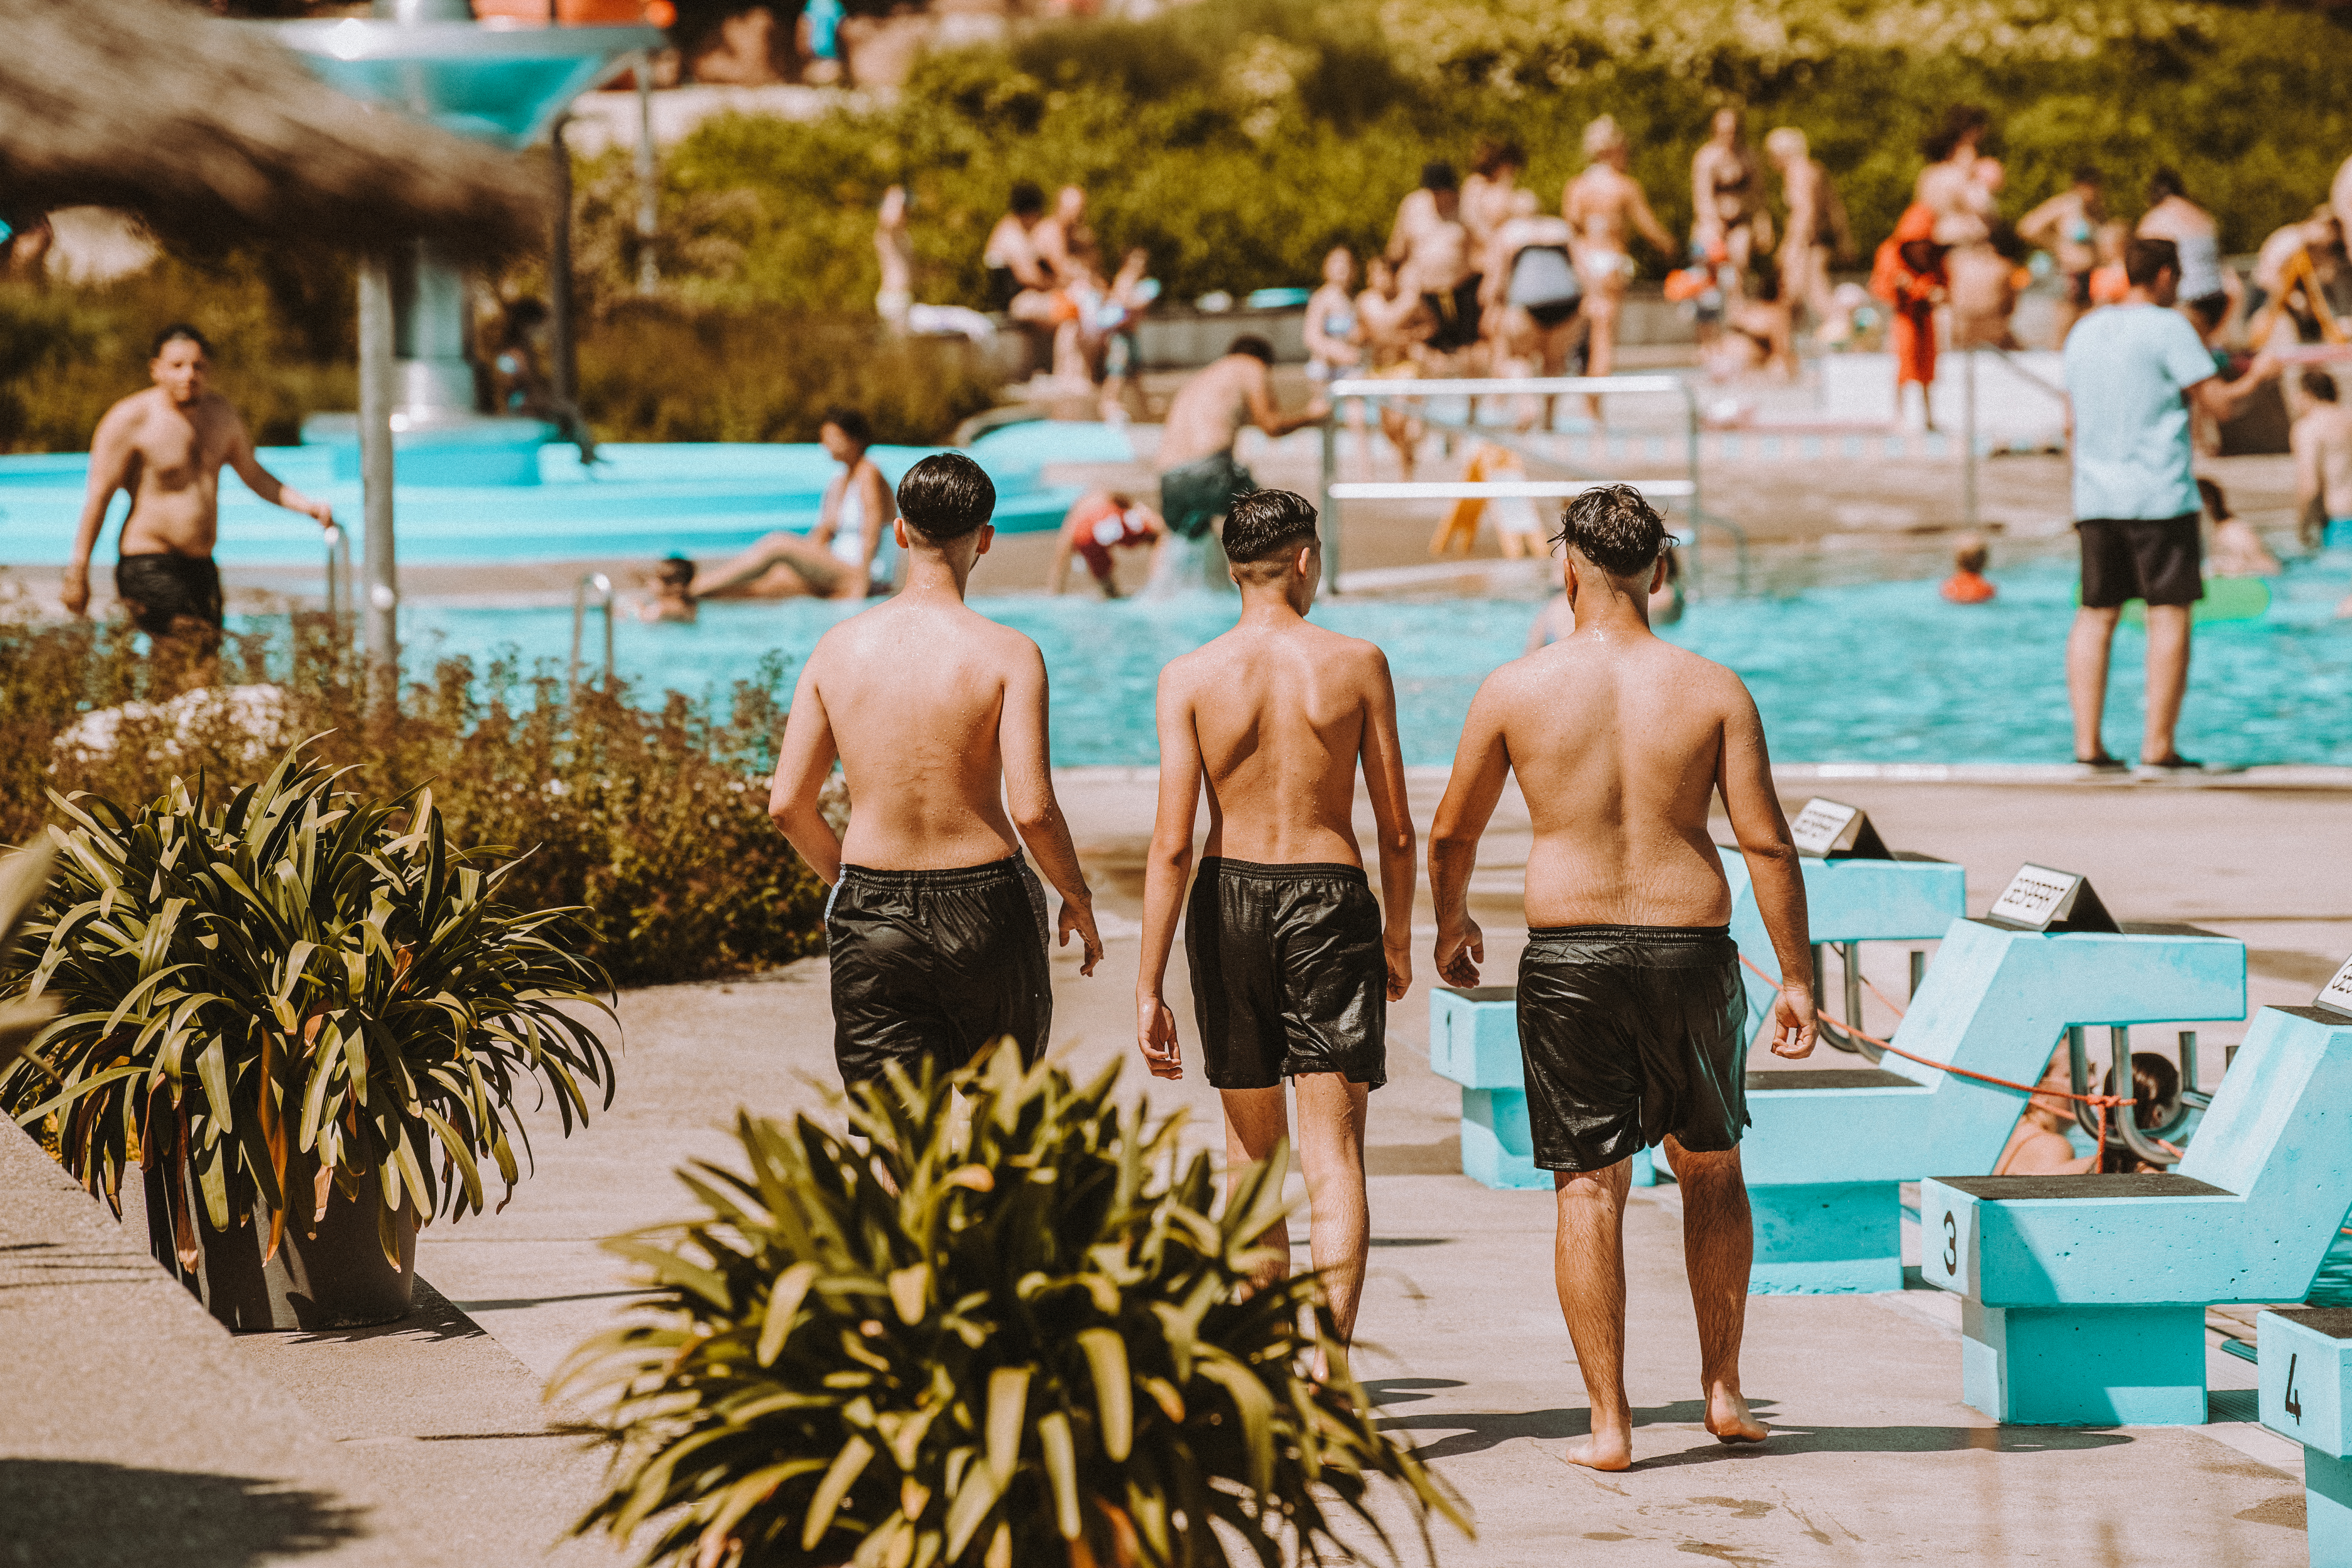  3 junge Männer gehen am Beckenrand entlang, im Hintergrund reger Badebetrieb 